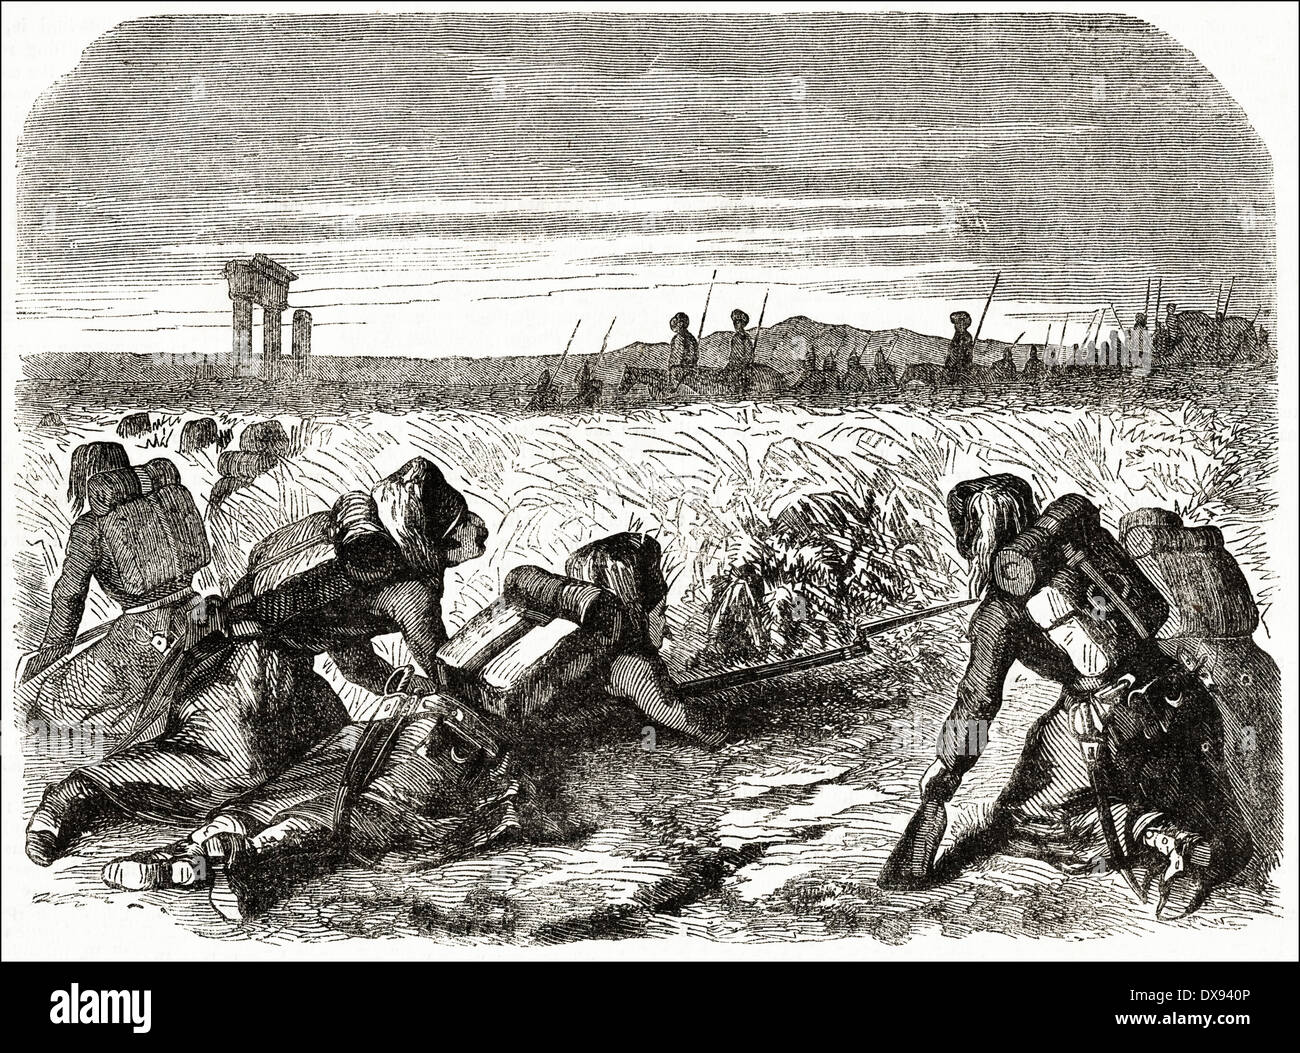 Türkische Truppen warten im Hinterhalt für russische Soldaten und Kavallerie während des Krimkrieges. Viktorianische Gravur ca. 1855 Stockfoto